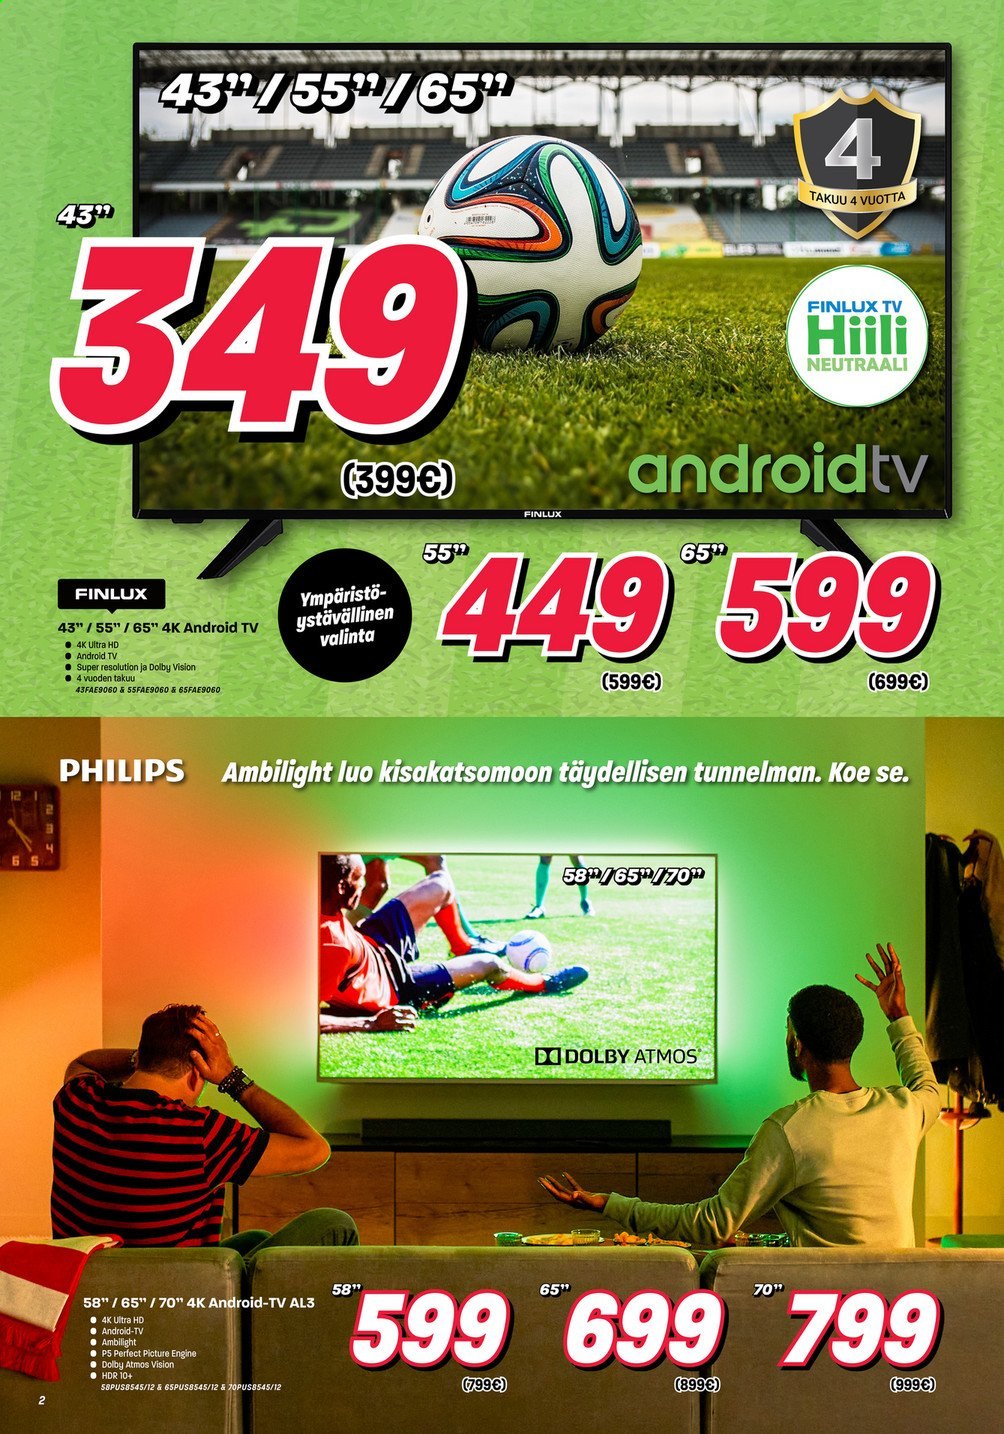 thumbnail - Veikon Kone tarjoukset  - 31.05.2021 - 05.06.2021 - Tarjoustuotteet - Philips, Android TV, TV, Ultra HD. Sivu 2.